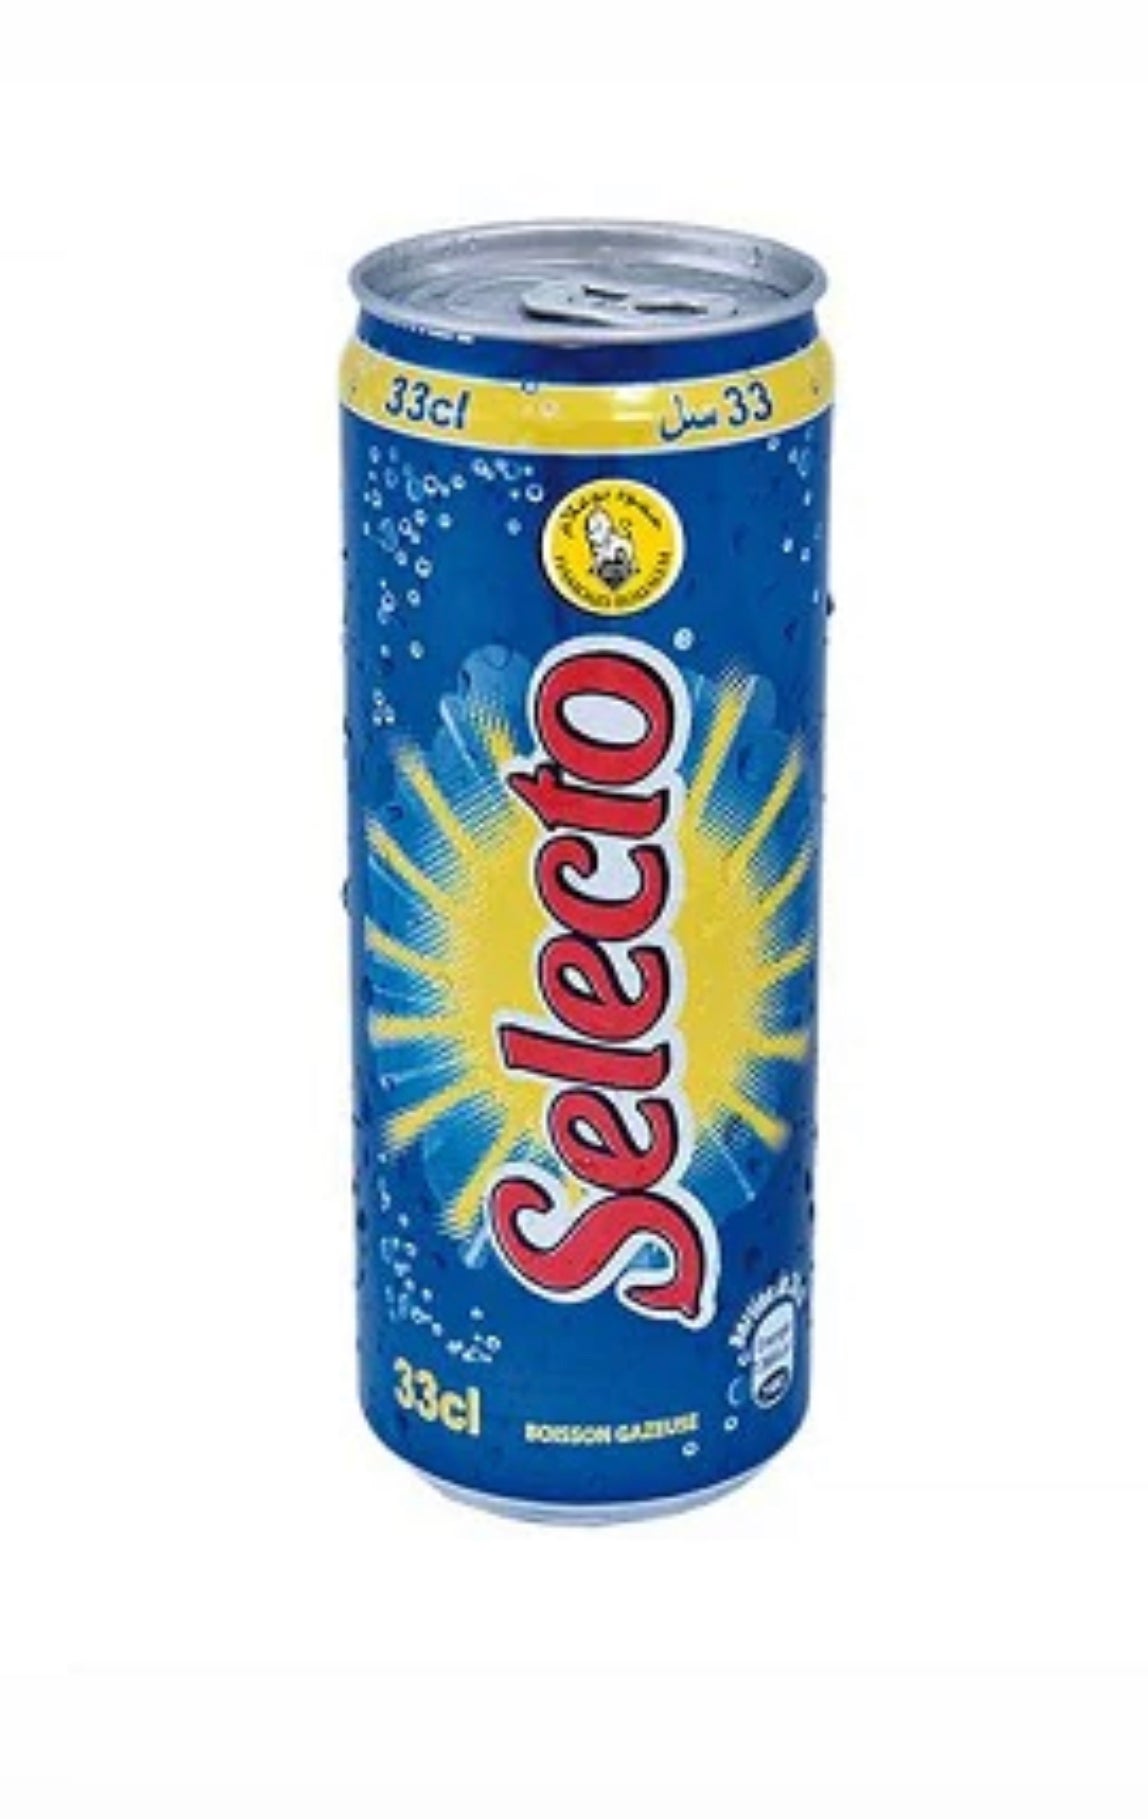 Selecto Drink 33cl